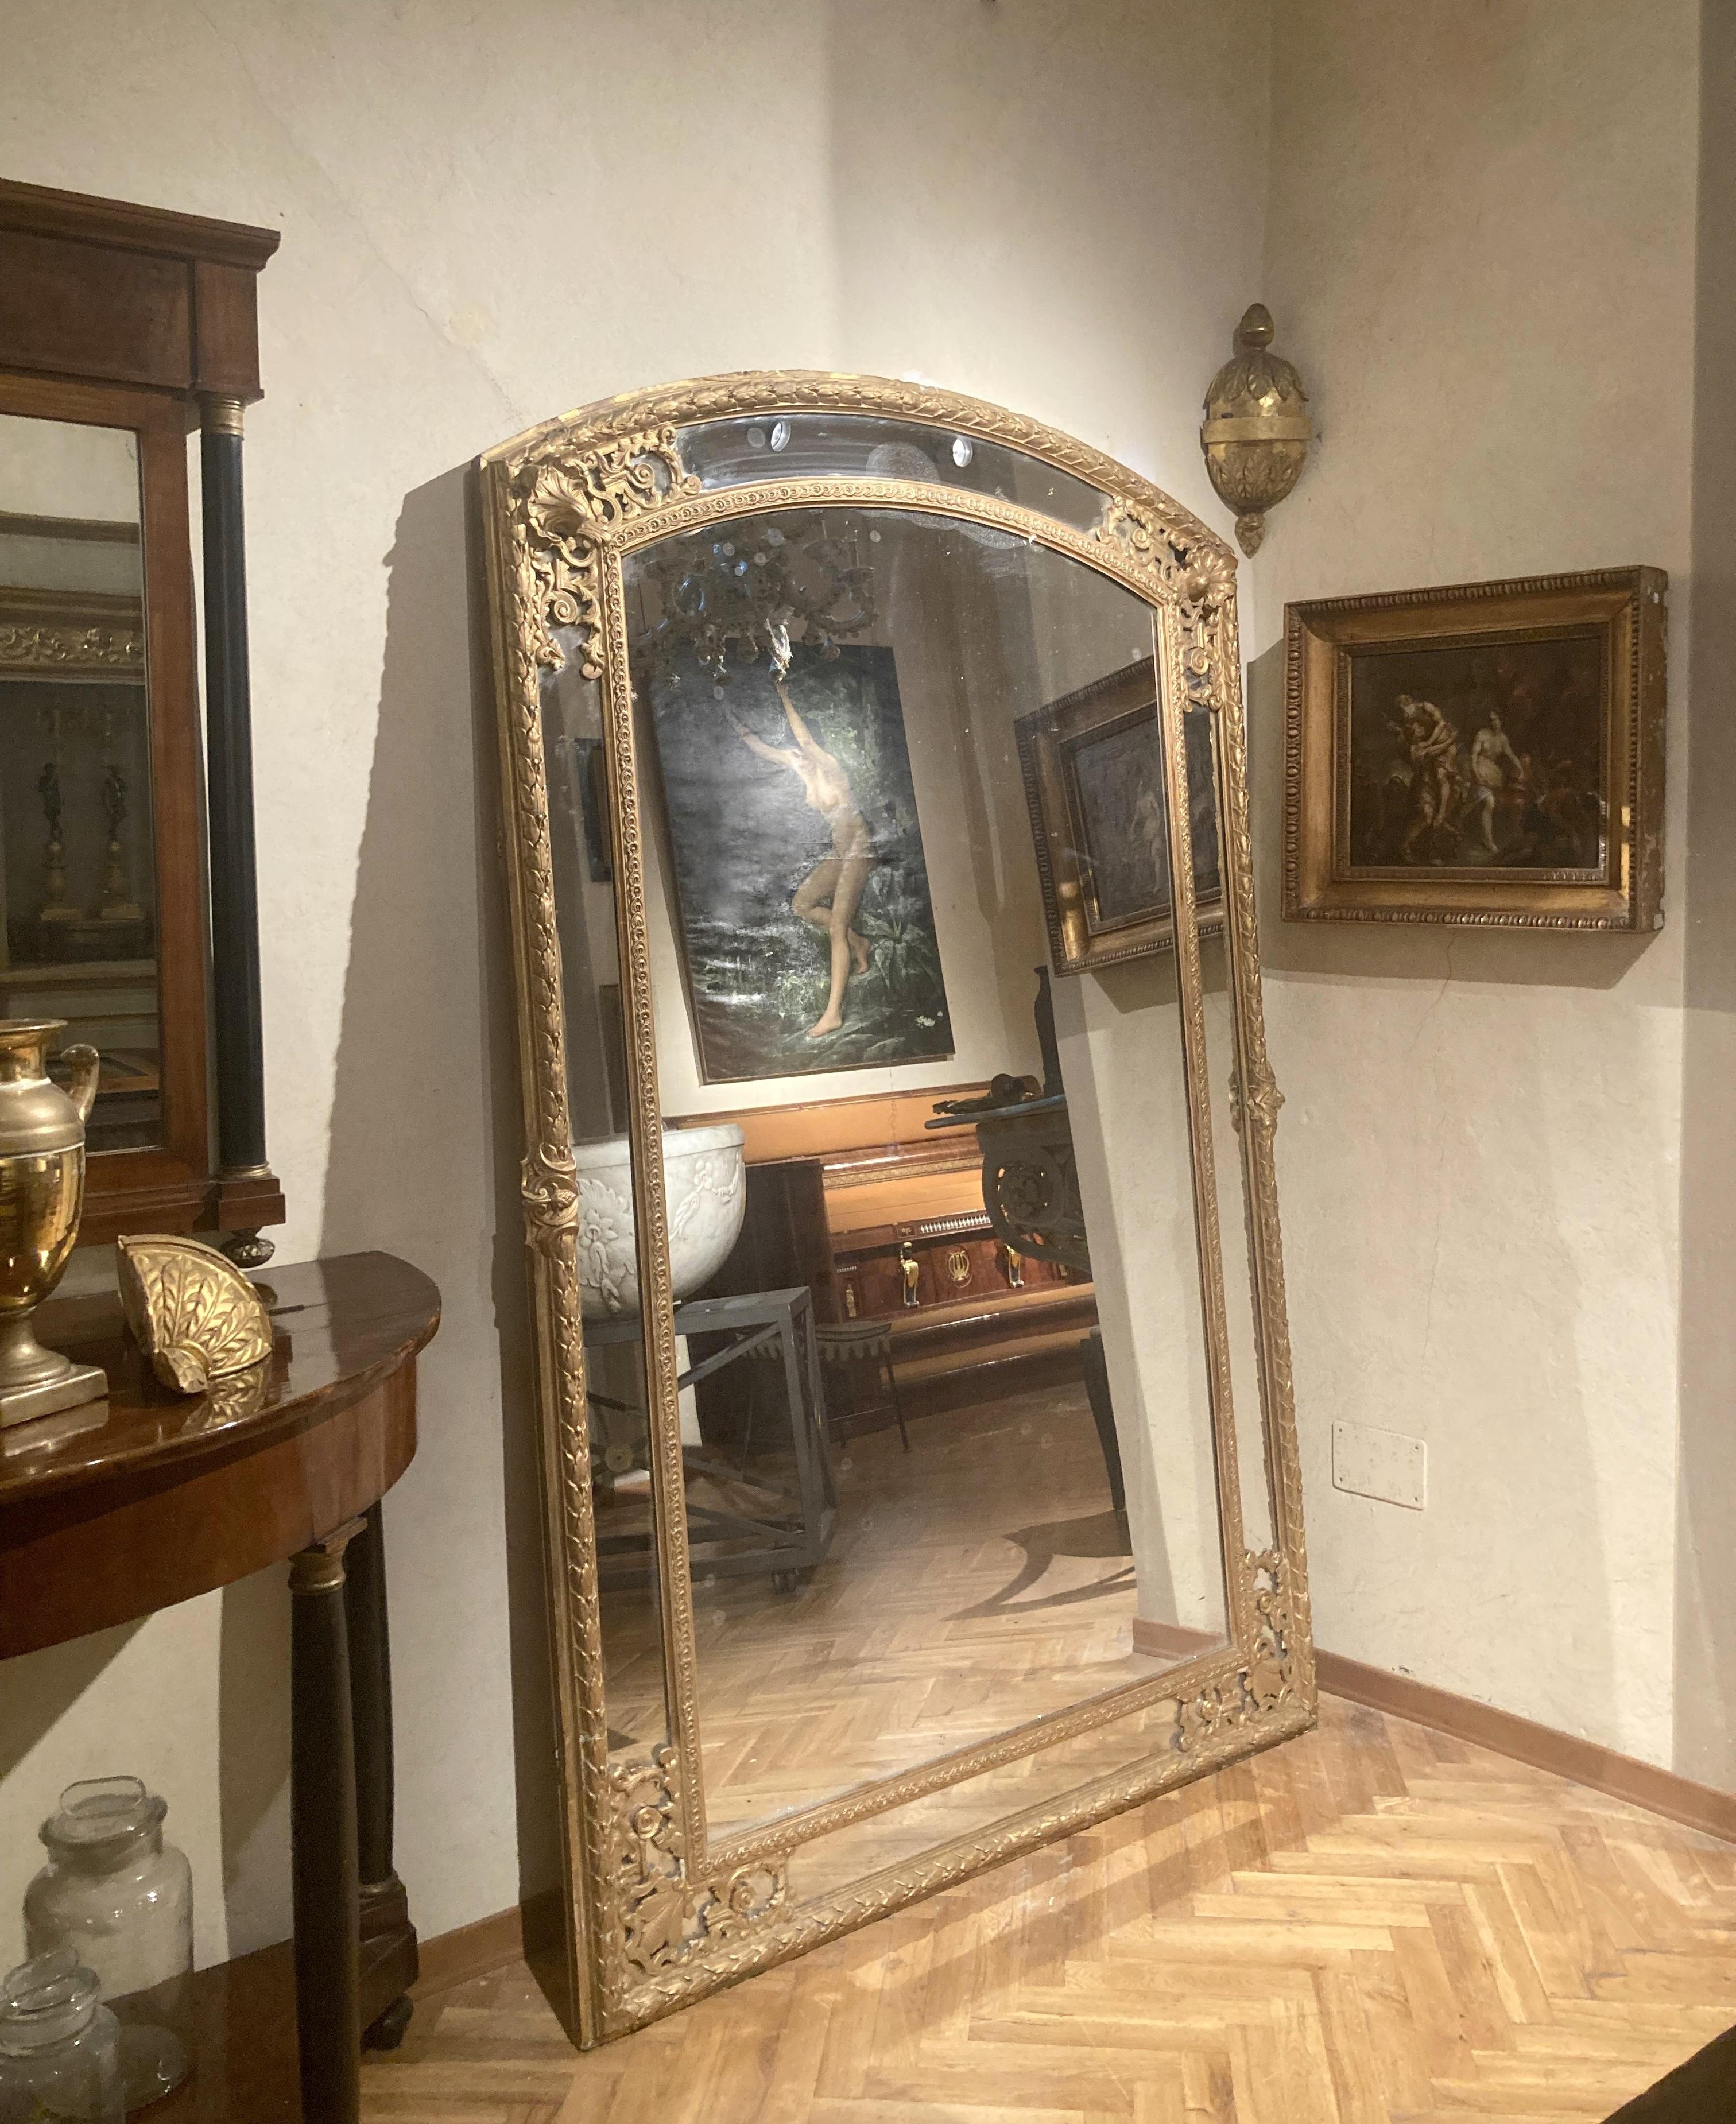 Une paire rare de miroirs de forme ronde en bois doré de style Louis XV du 19ème siècle avec une belle finition dorée, une plaque de mercure d'origine et un support à panneaux. 
Qu'ils soient posés sur le sol ou accrochés au mur, ces miroirs pleine